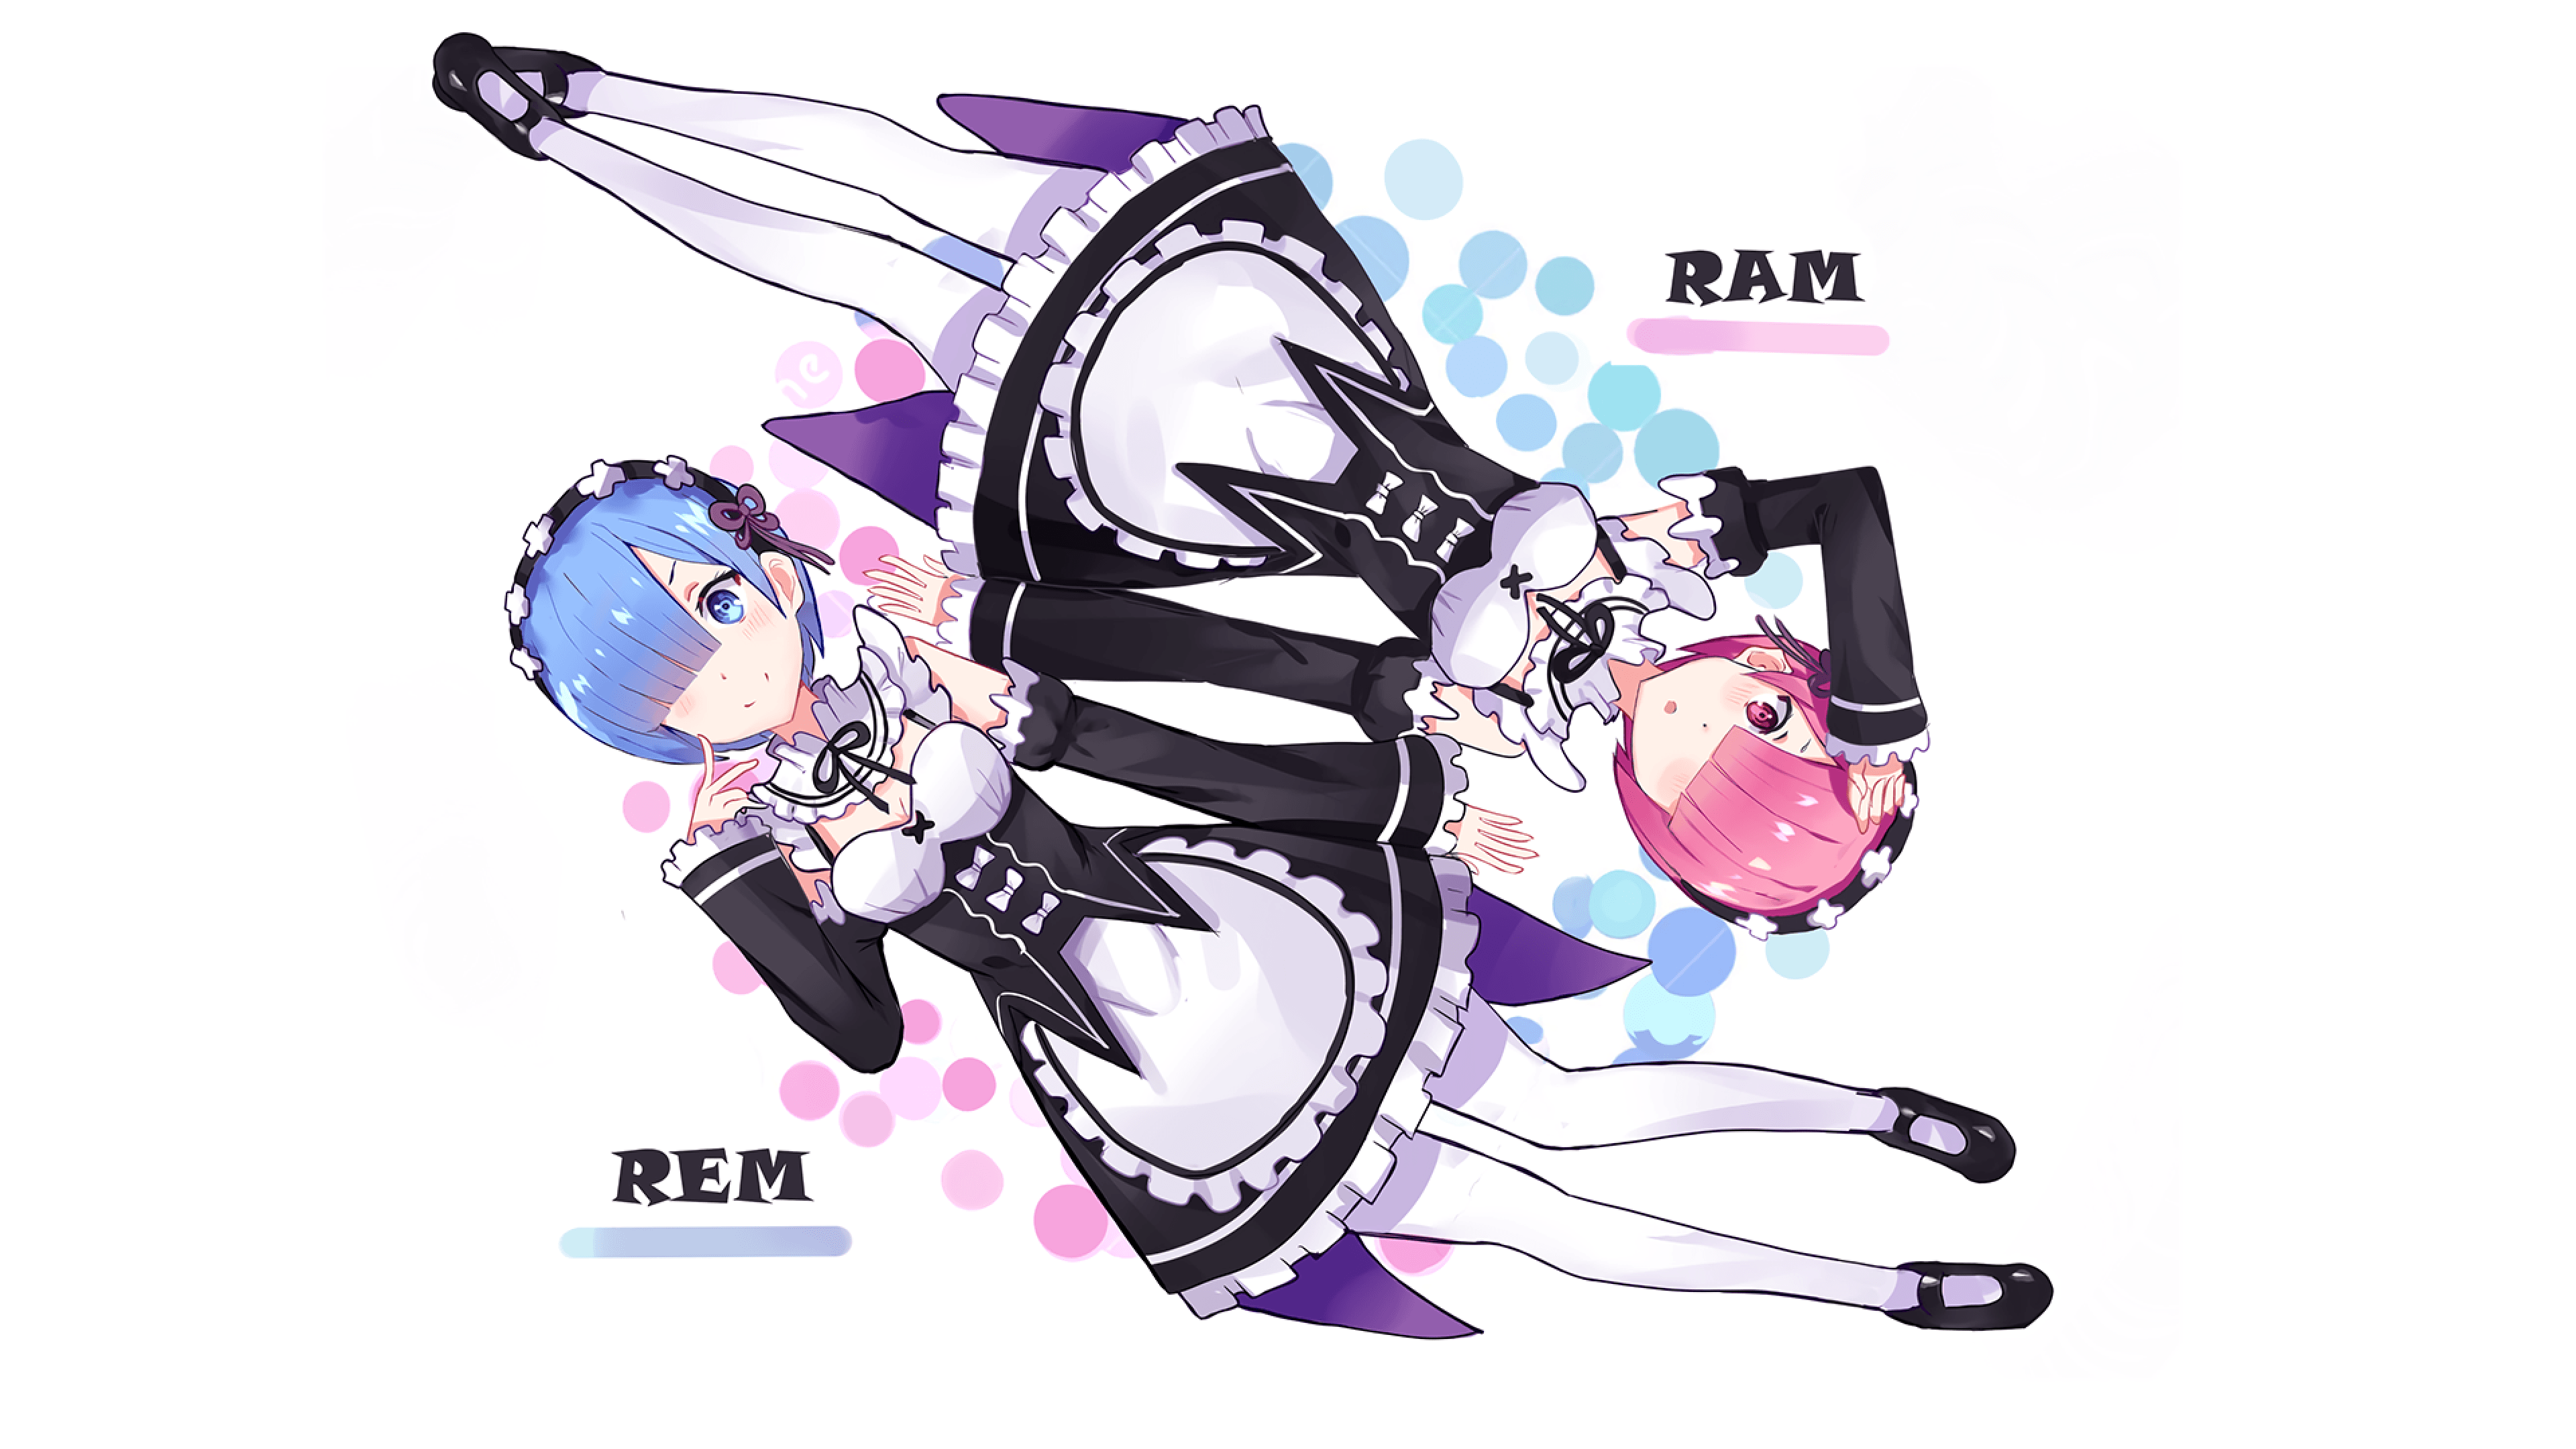 Ram & Rem